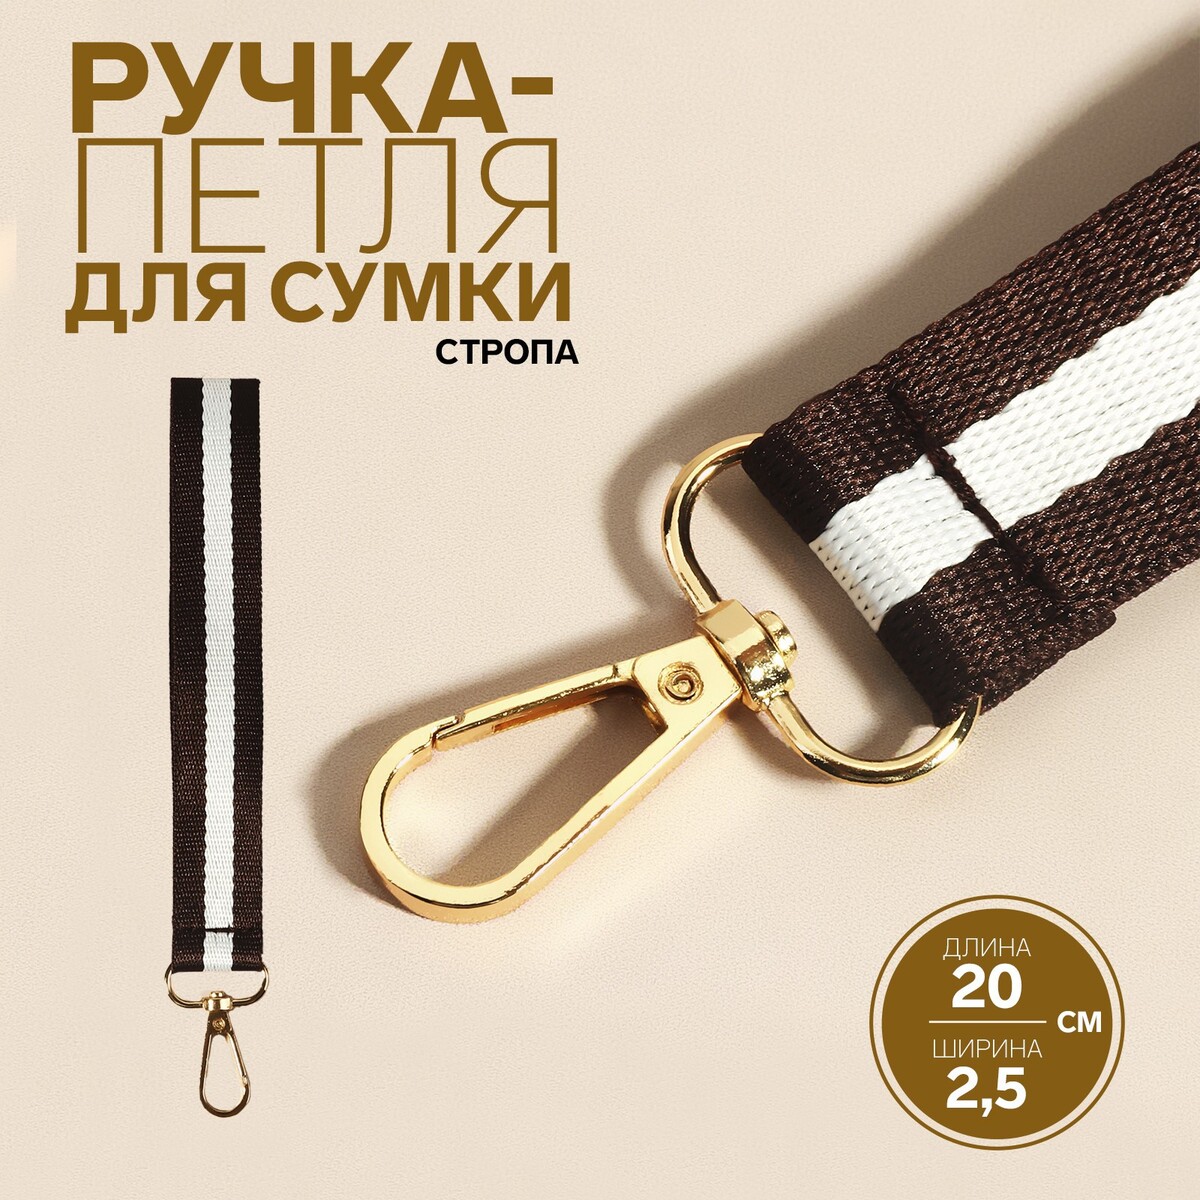 Ручка-петля для сумки, стропа, 20 × 2,5 см, цвет коричневый/белый петля для петлюры